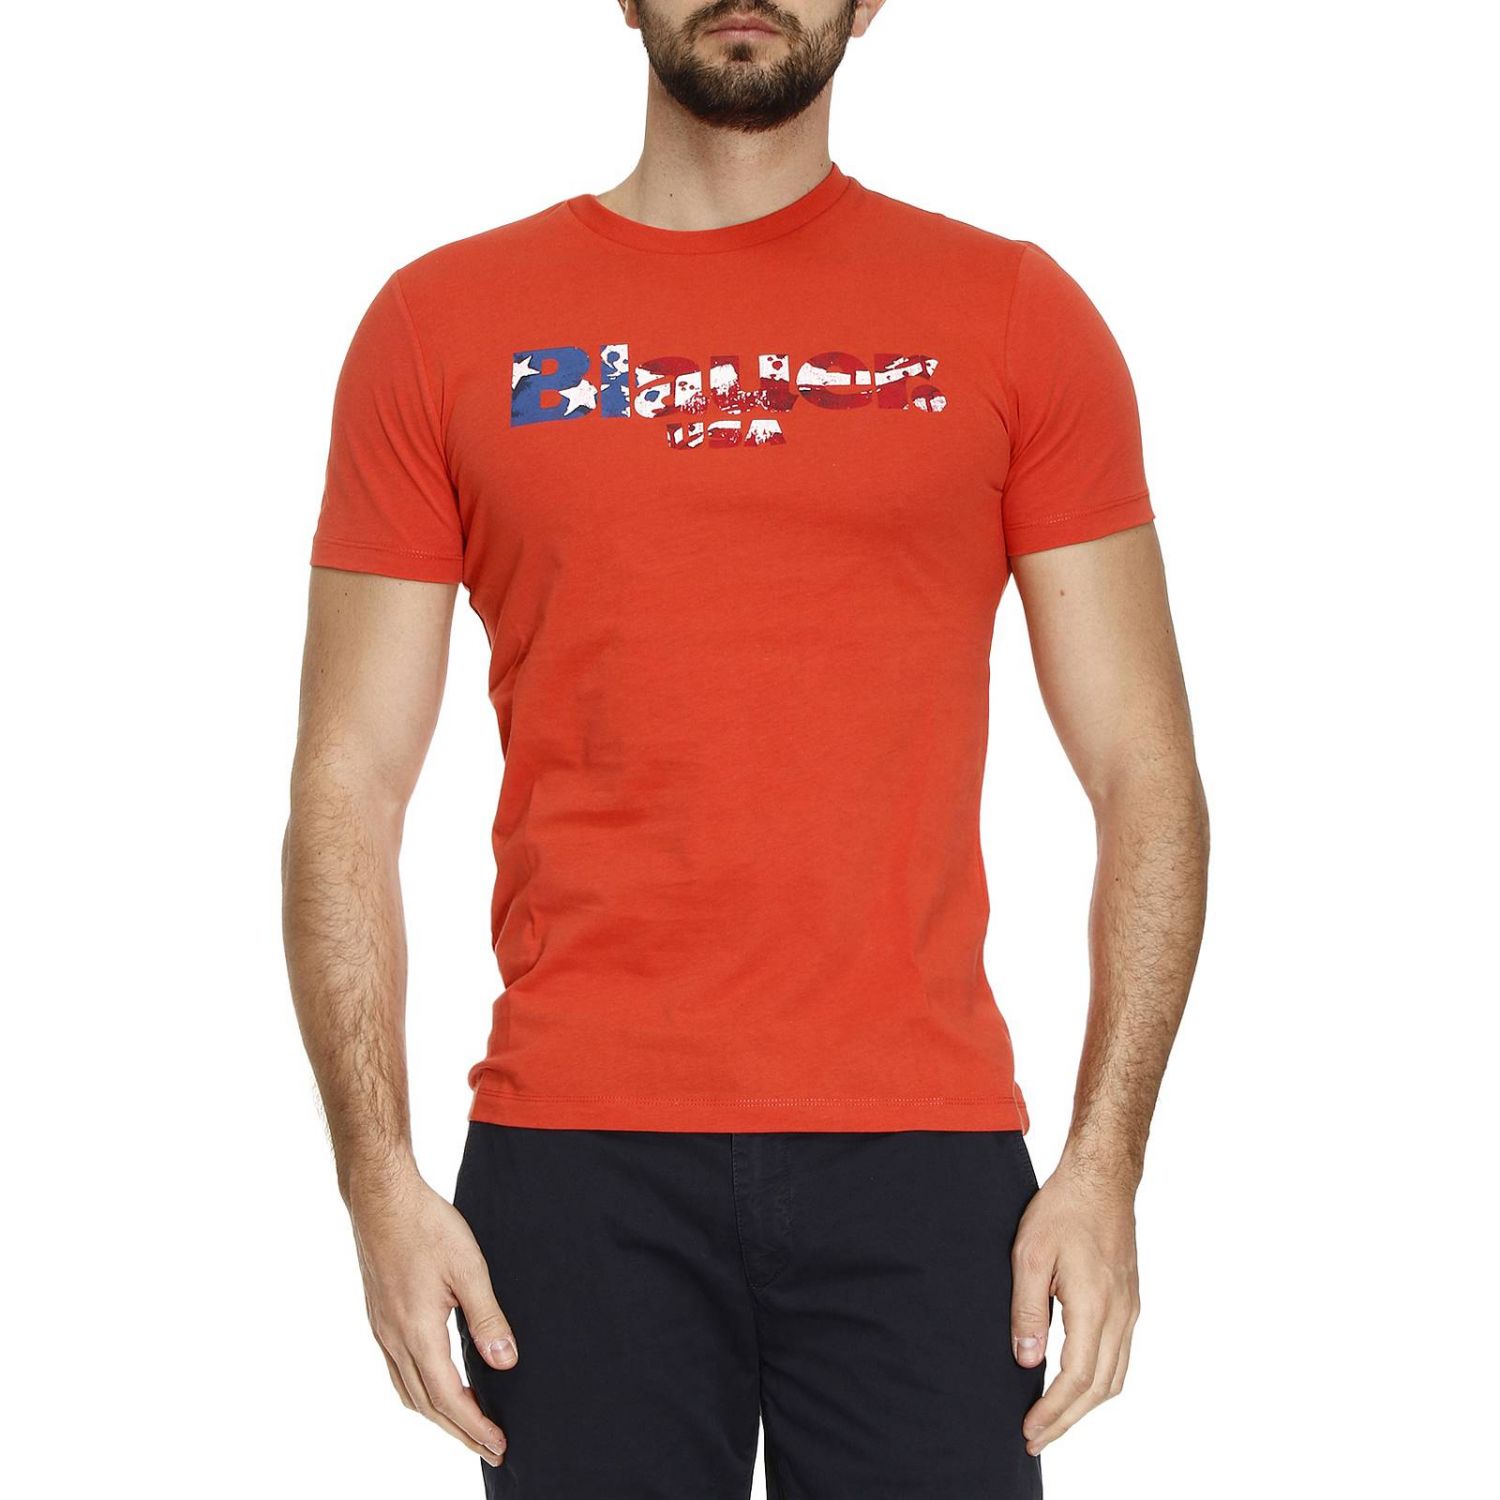 Blauer Outlet: T-shirt men | T-Shirt Blauer Men Red | T-Shirt Blauer ...